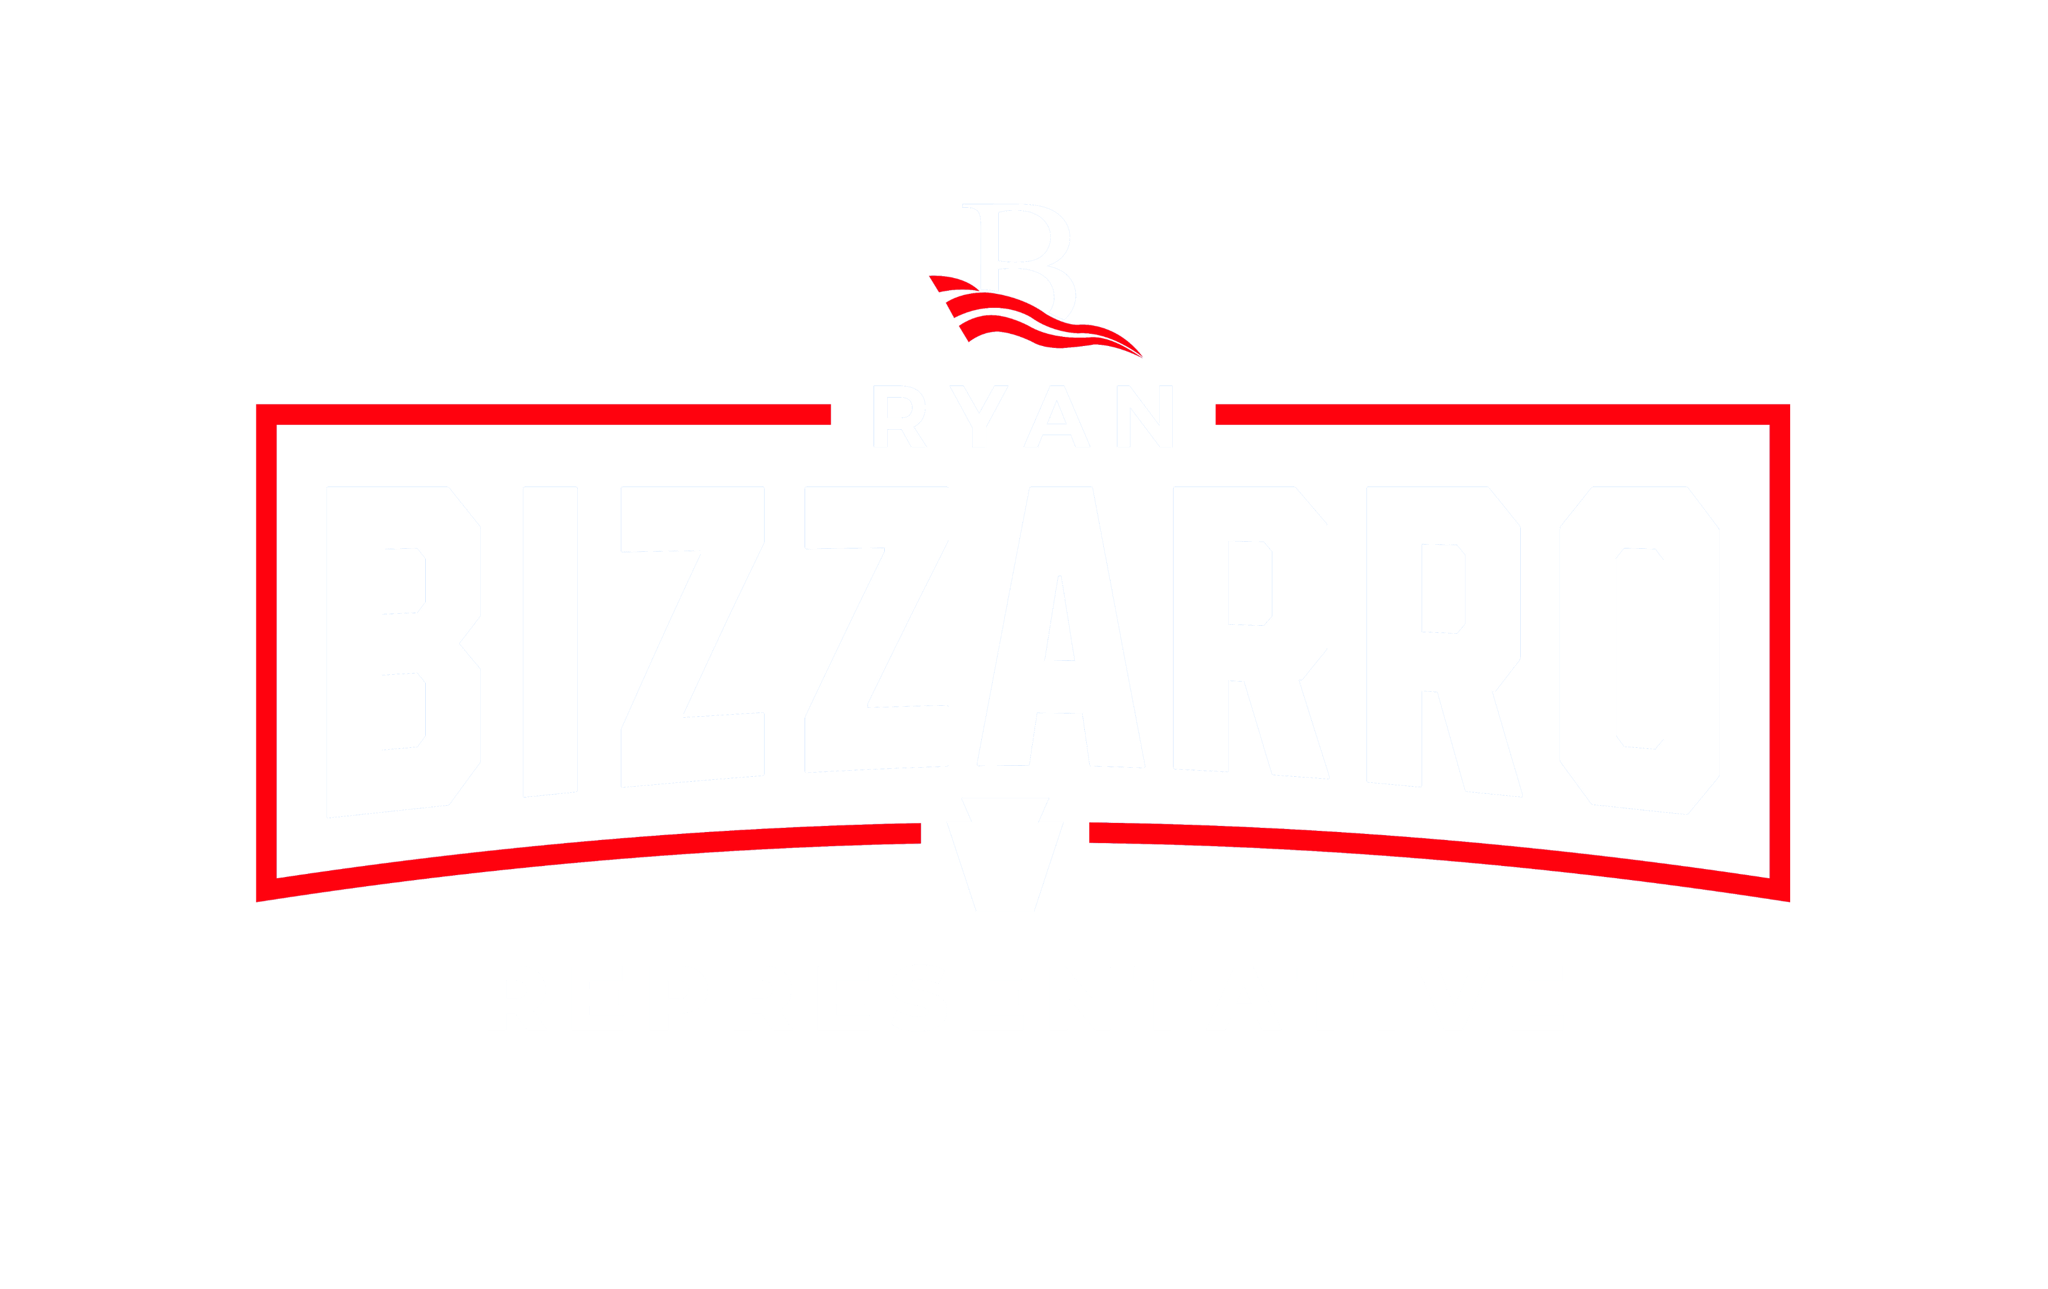 Campaign logo